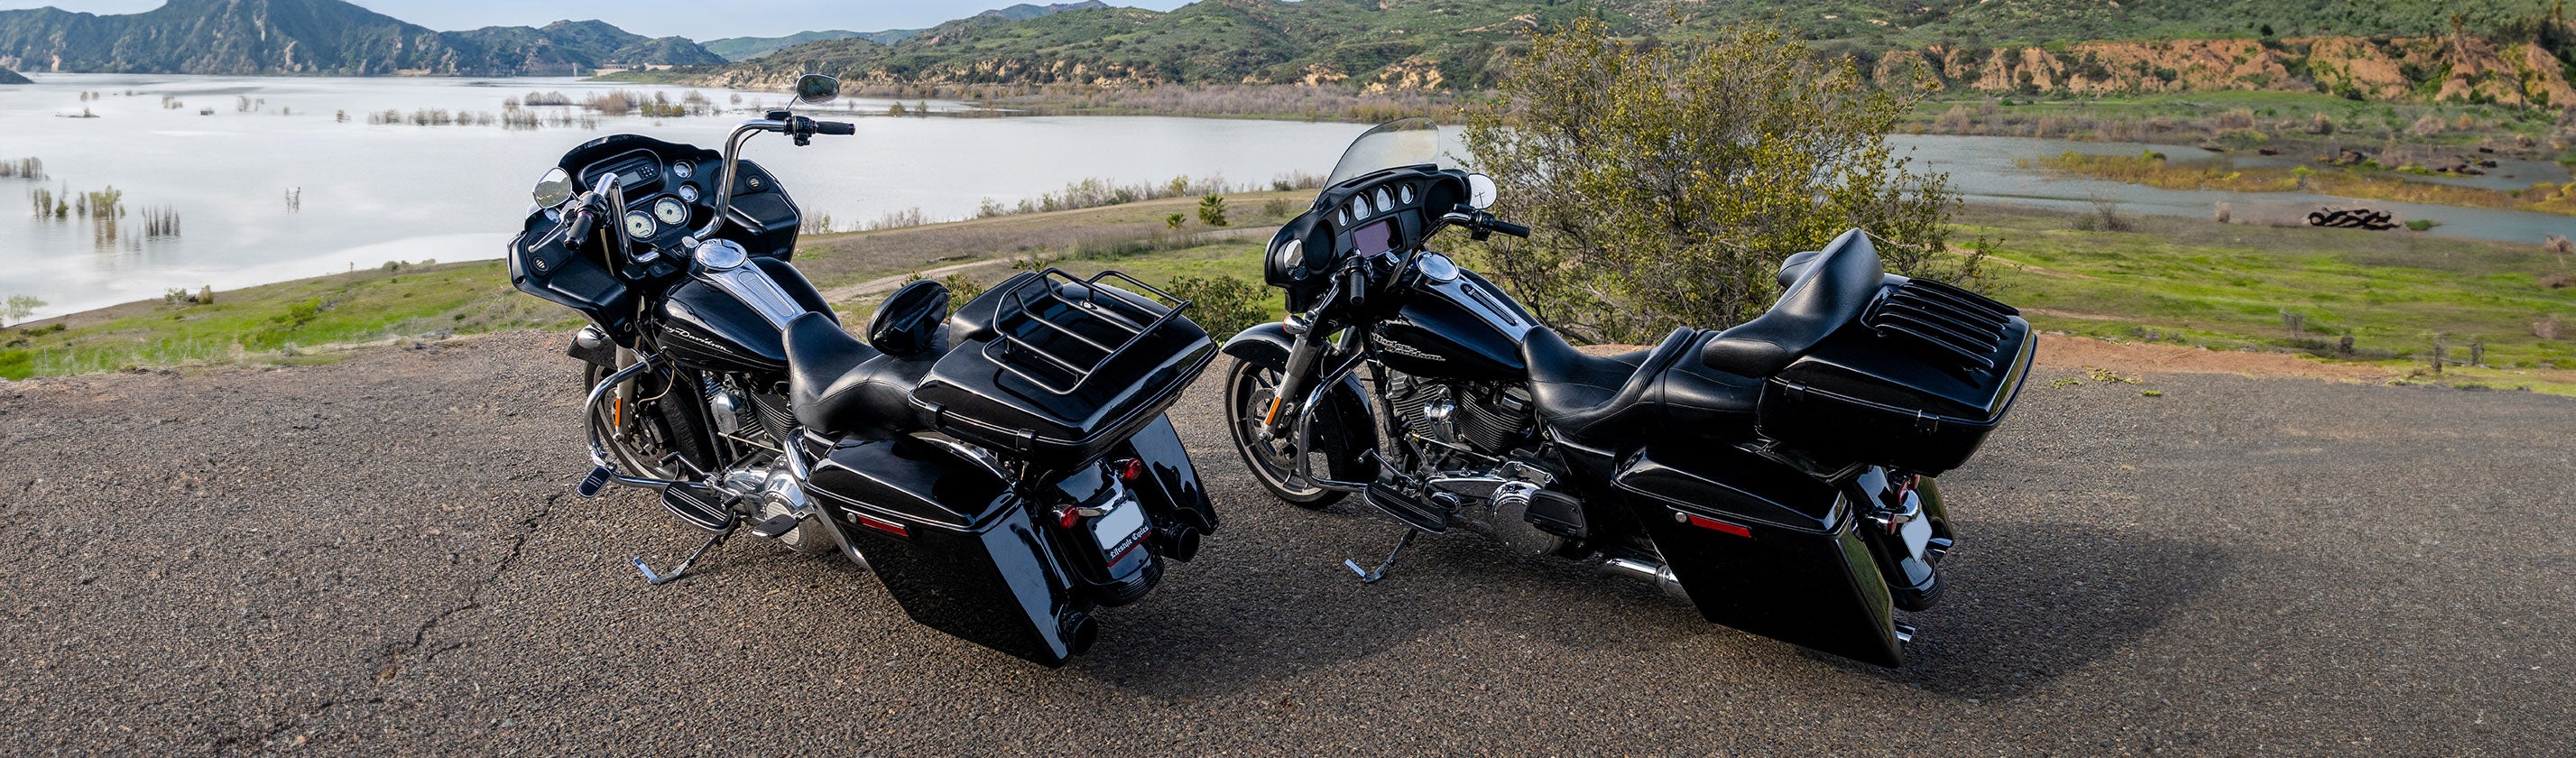 Harley Davidson Touring Road King Luggage Racks